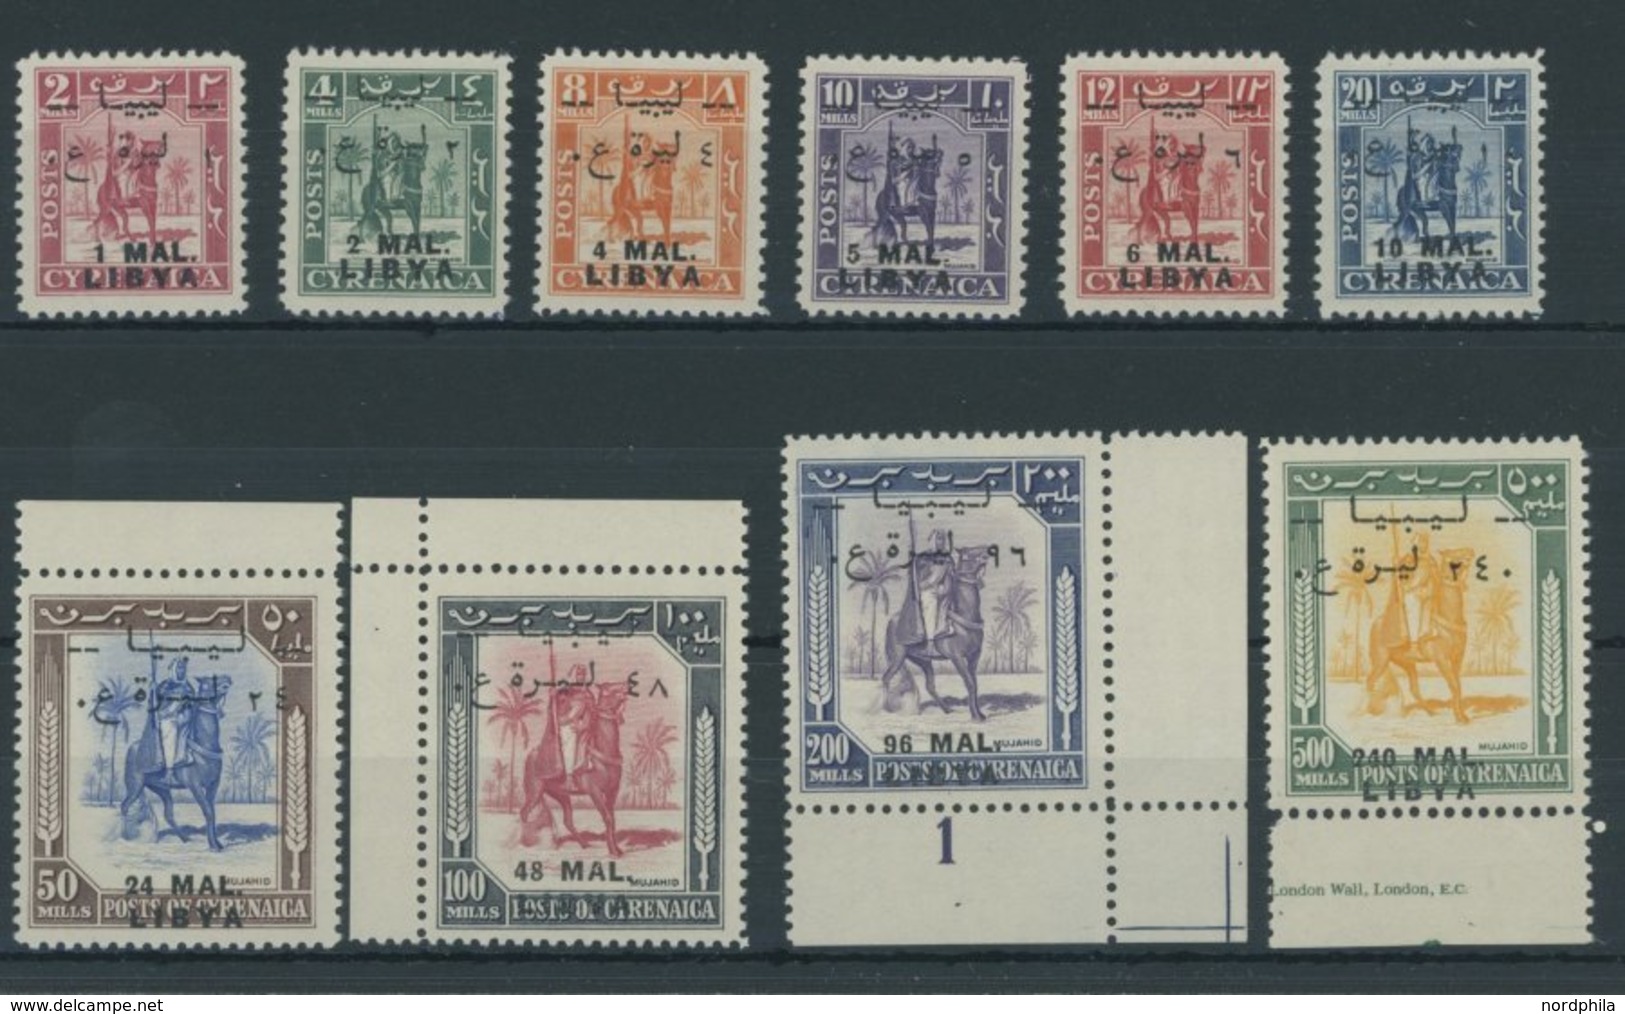 LIBYEN 24-31 **, 1951, Senussi-Kampfreiter, MAL-Währung, Postfrischer Prachtsatz, Signiert Zumstein, Mi. 130.- - Libye